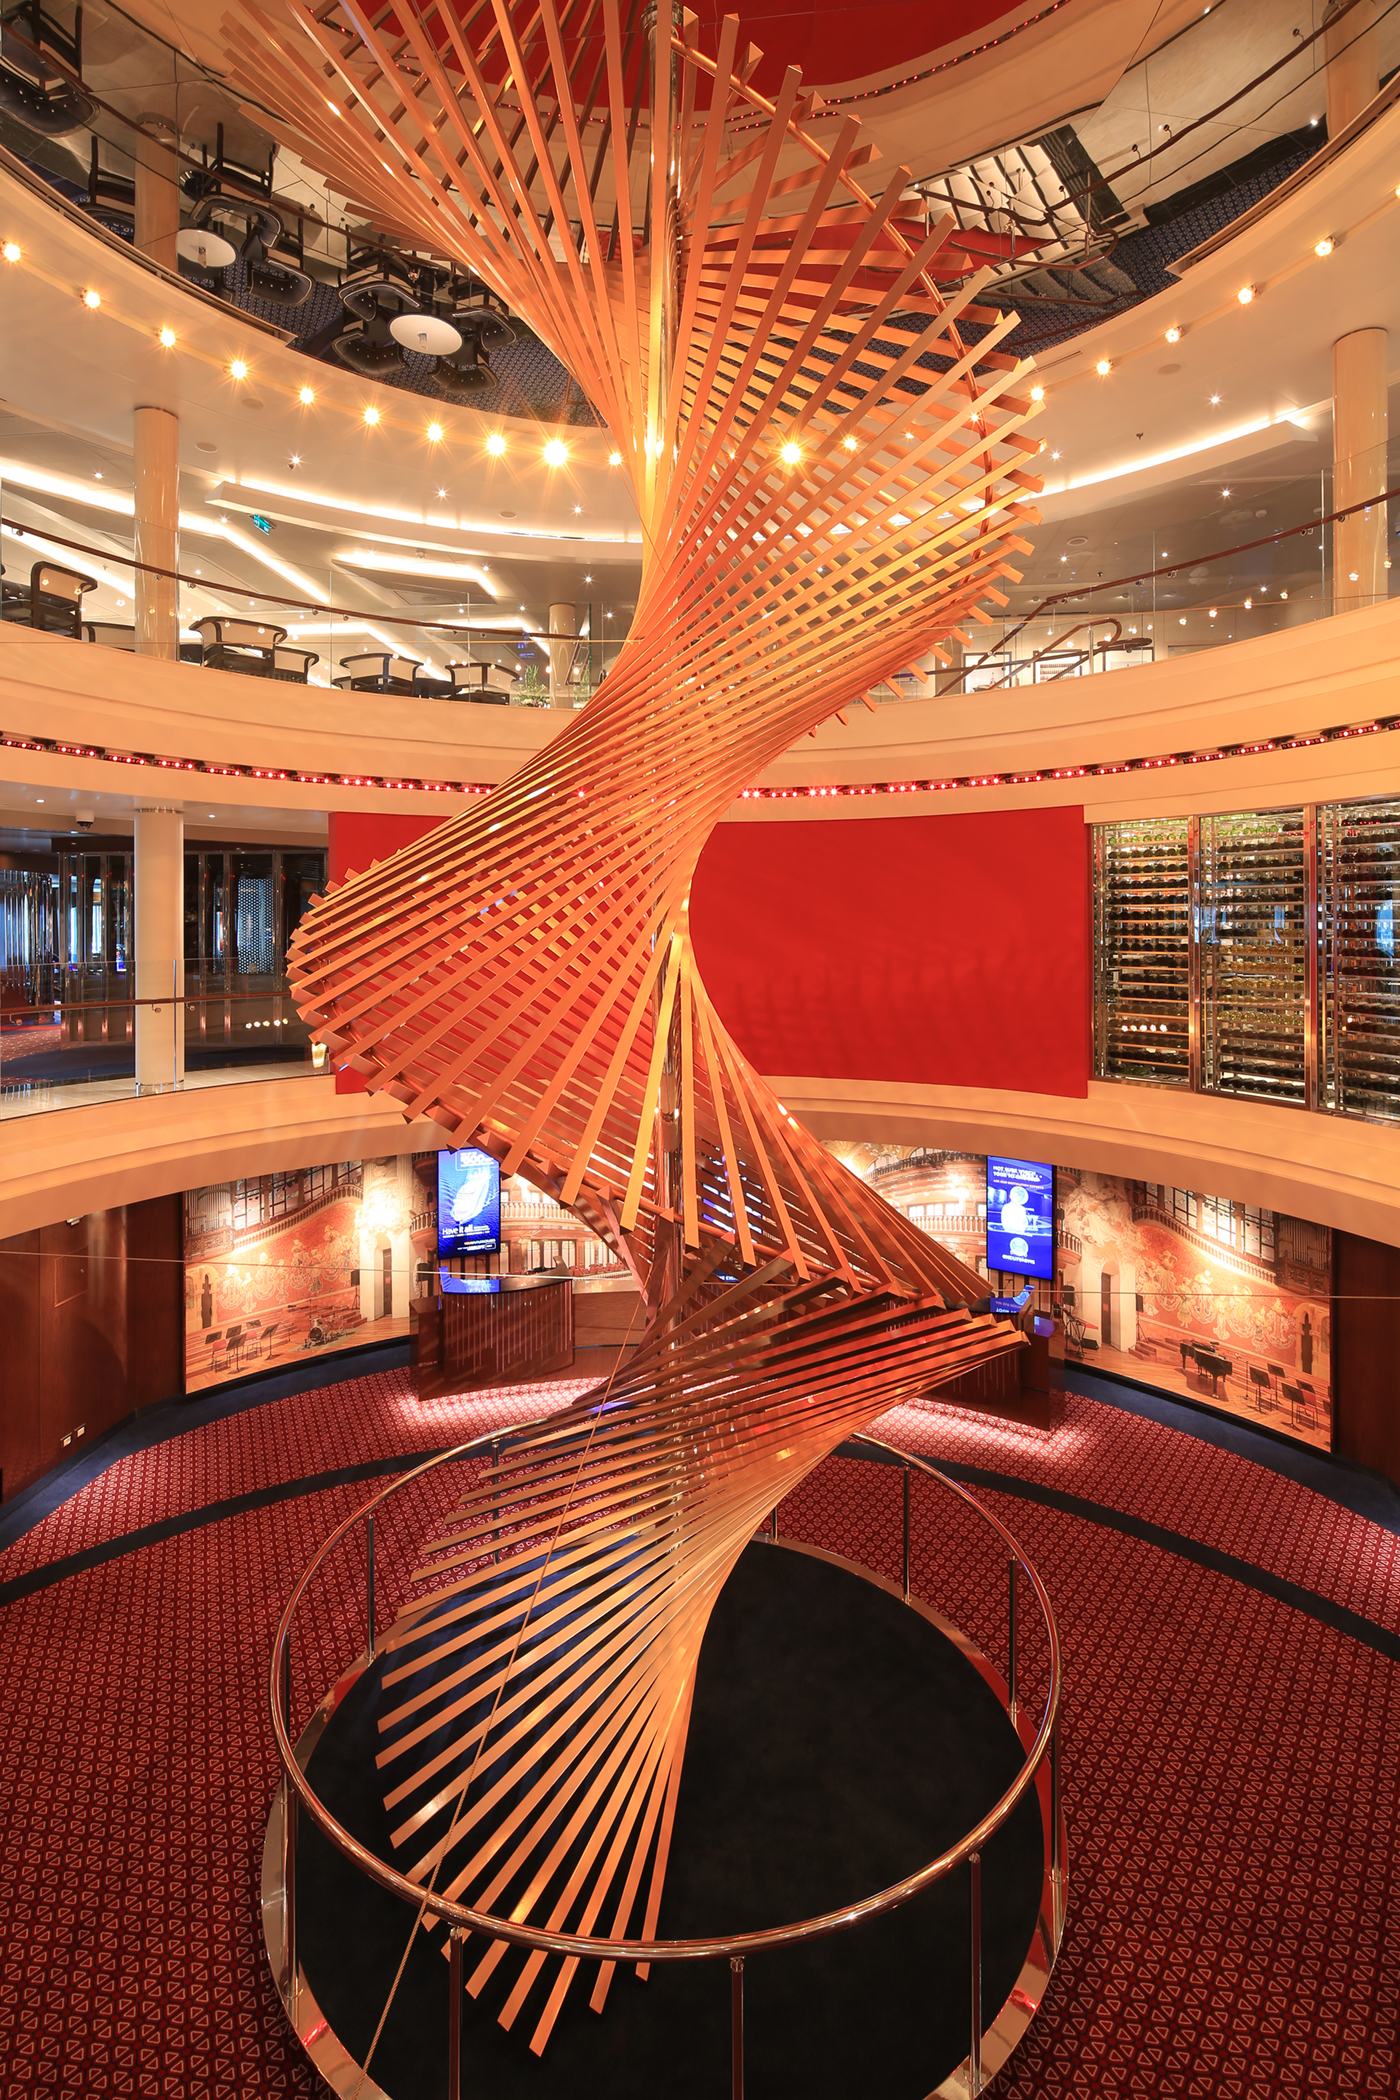 “Harps,” a 7.5-ton stainless steel sculpture in Rotterdam’s Atrium spans three decks